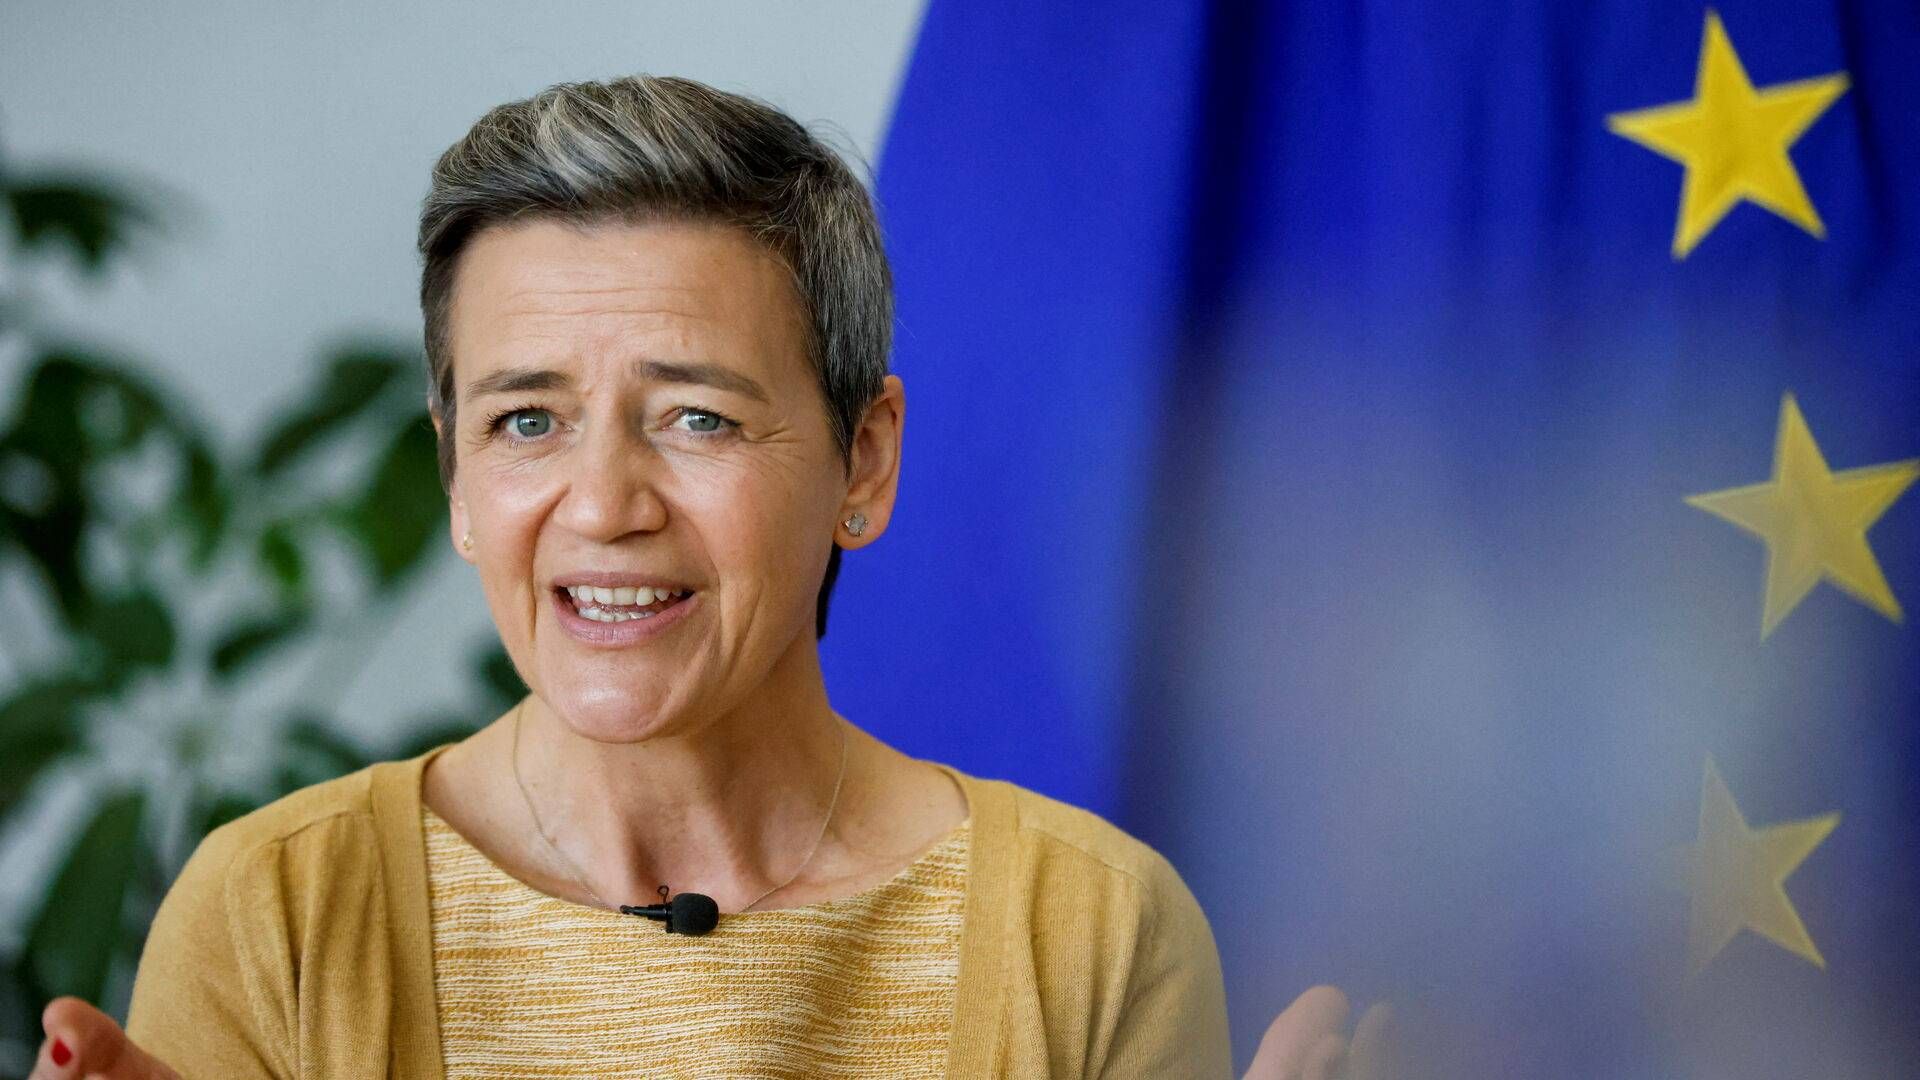 EU's konkurrencekommissær, Margrethe Vestager, mener ikke, der er en særlig stor risiko for, at producenter af grønt brændstof rykker til USA. | Foto: Johanna Geron/Reuters/Ritzau Scanpix